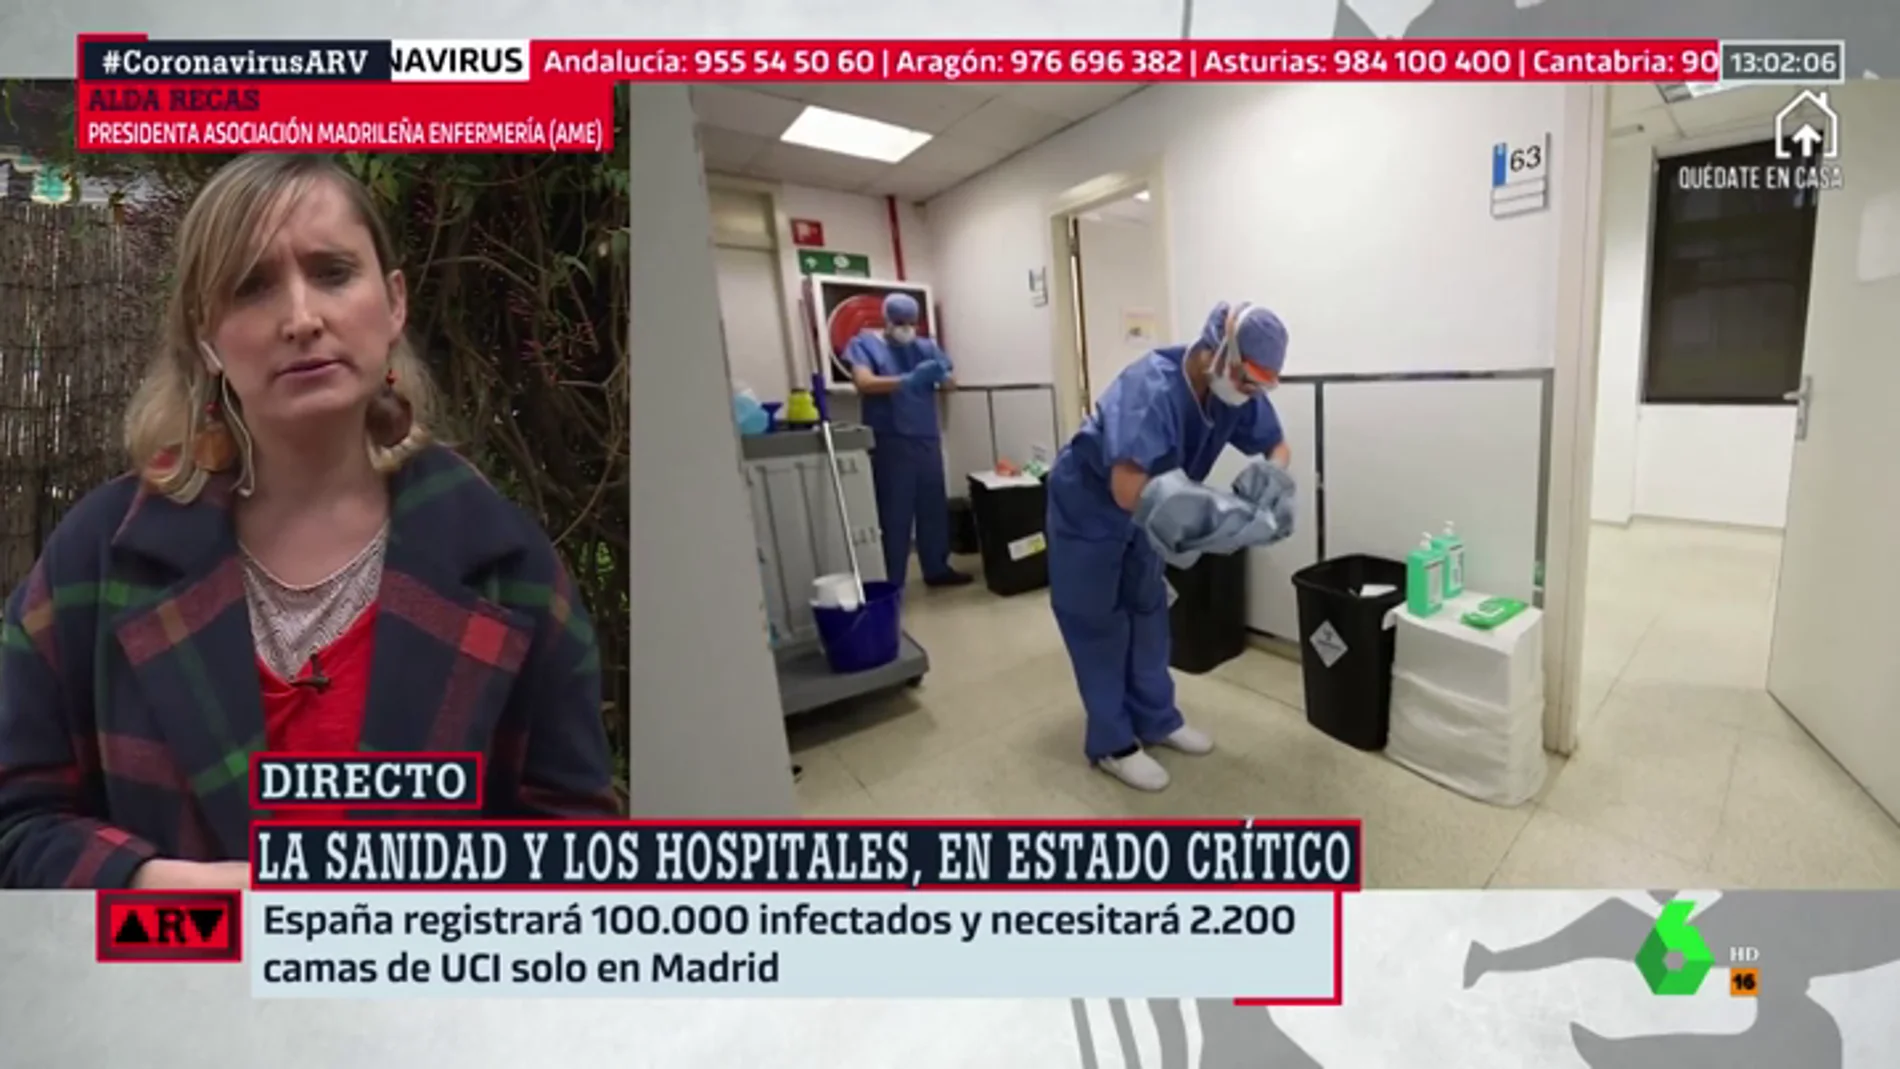 Alda Recas, presidenta de la Asociación Madrileña de Enfermería: "Los que estamos en primera línea exigimos que nos cuiden"